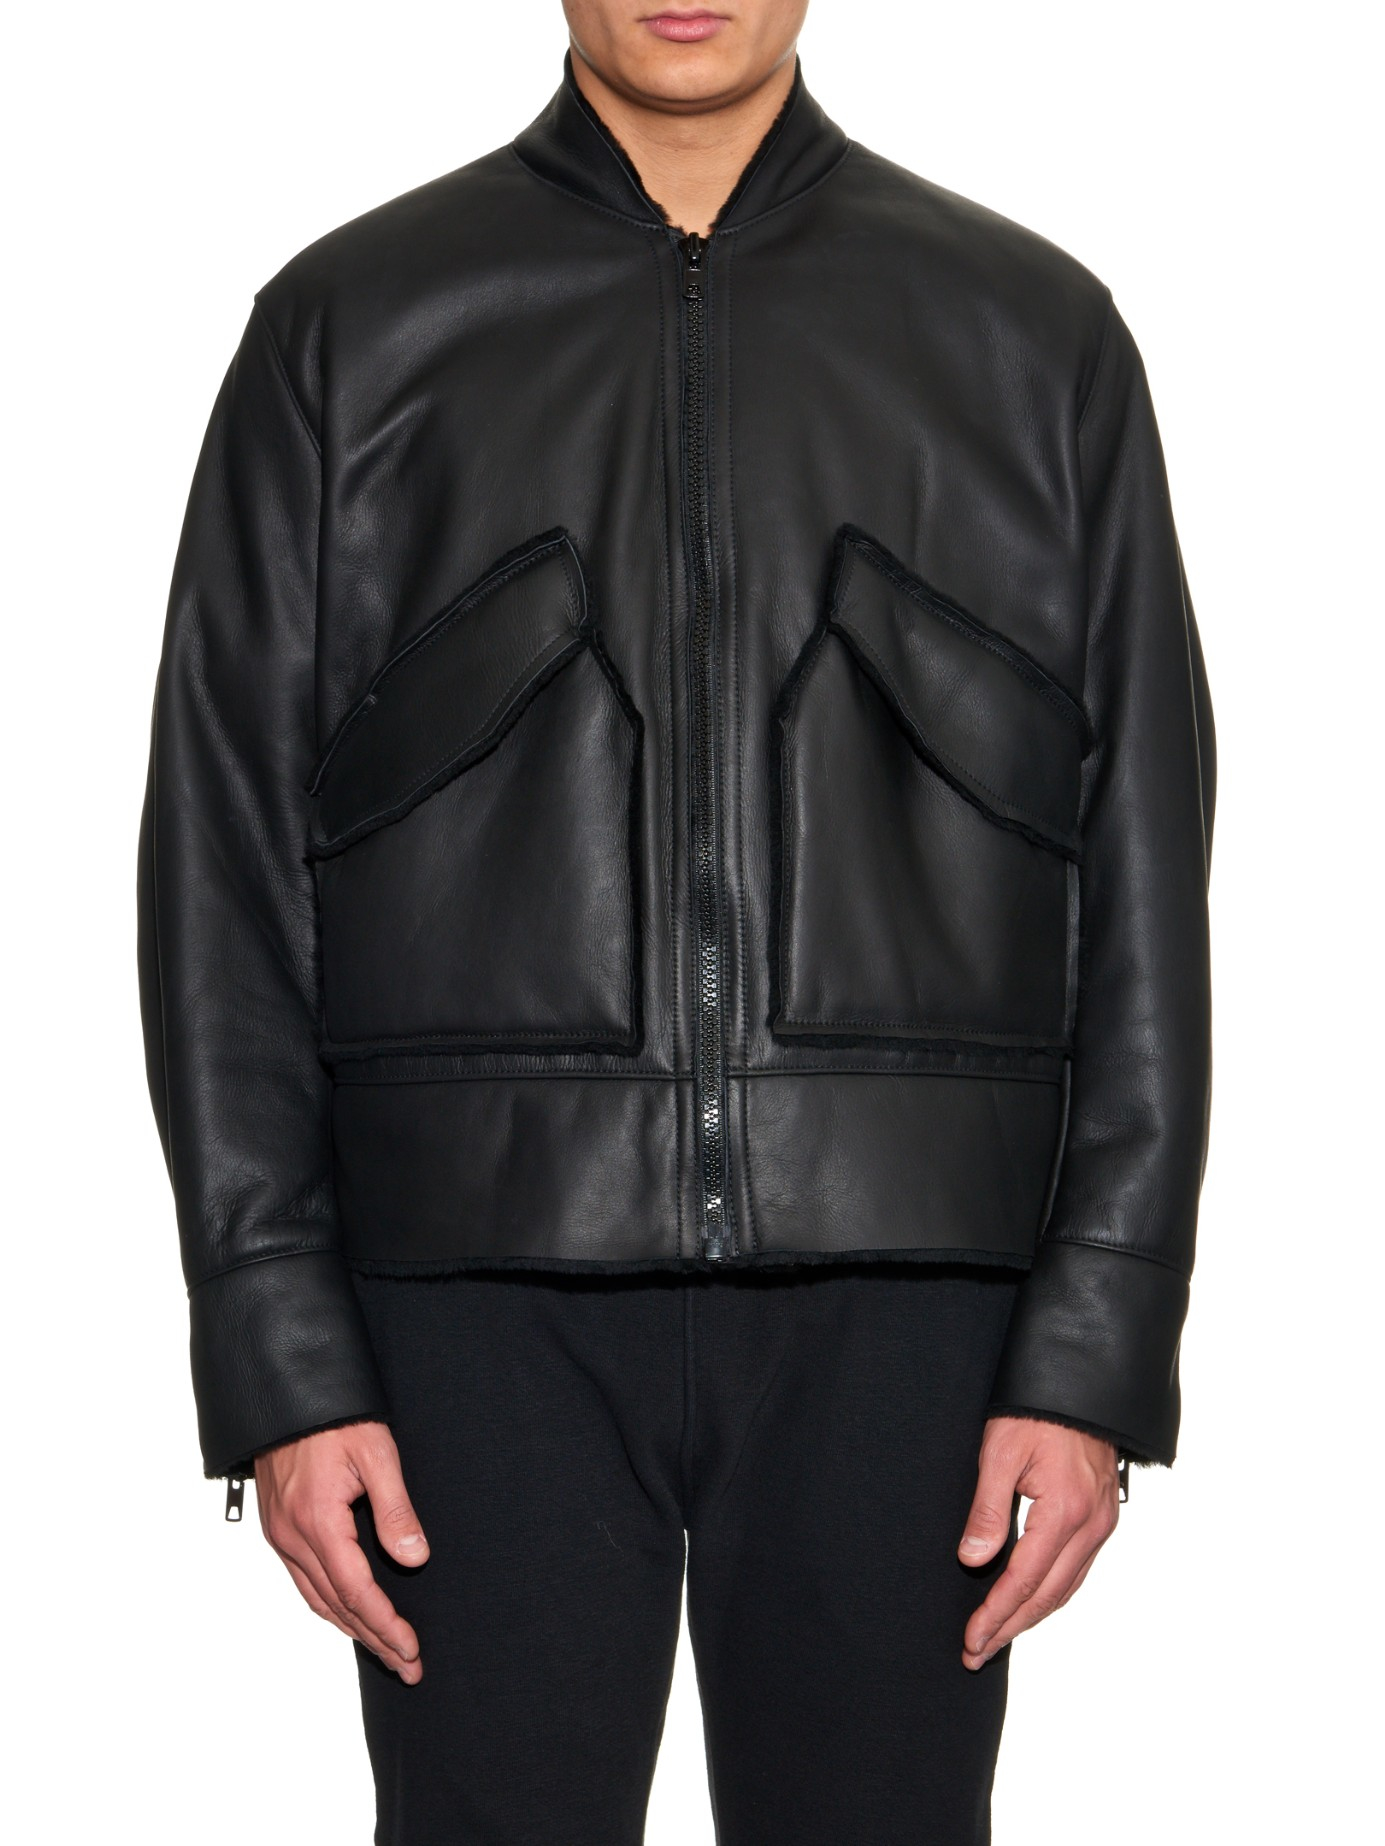 yeezy leather jacket